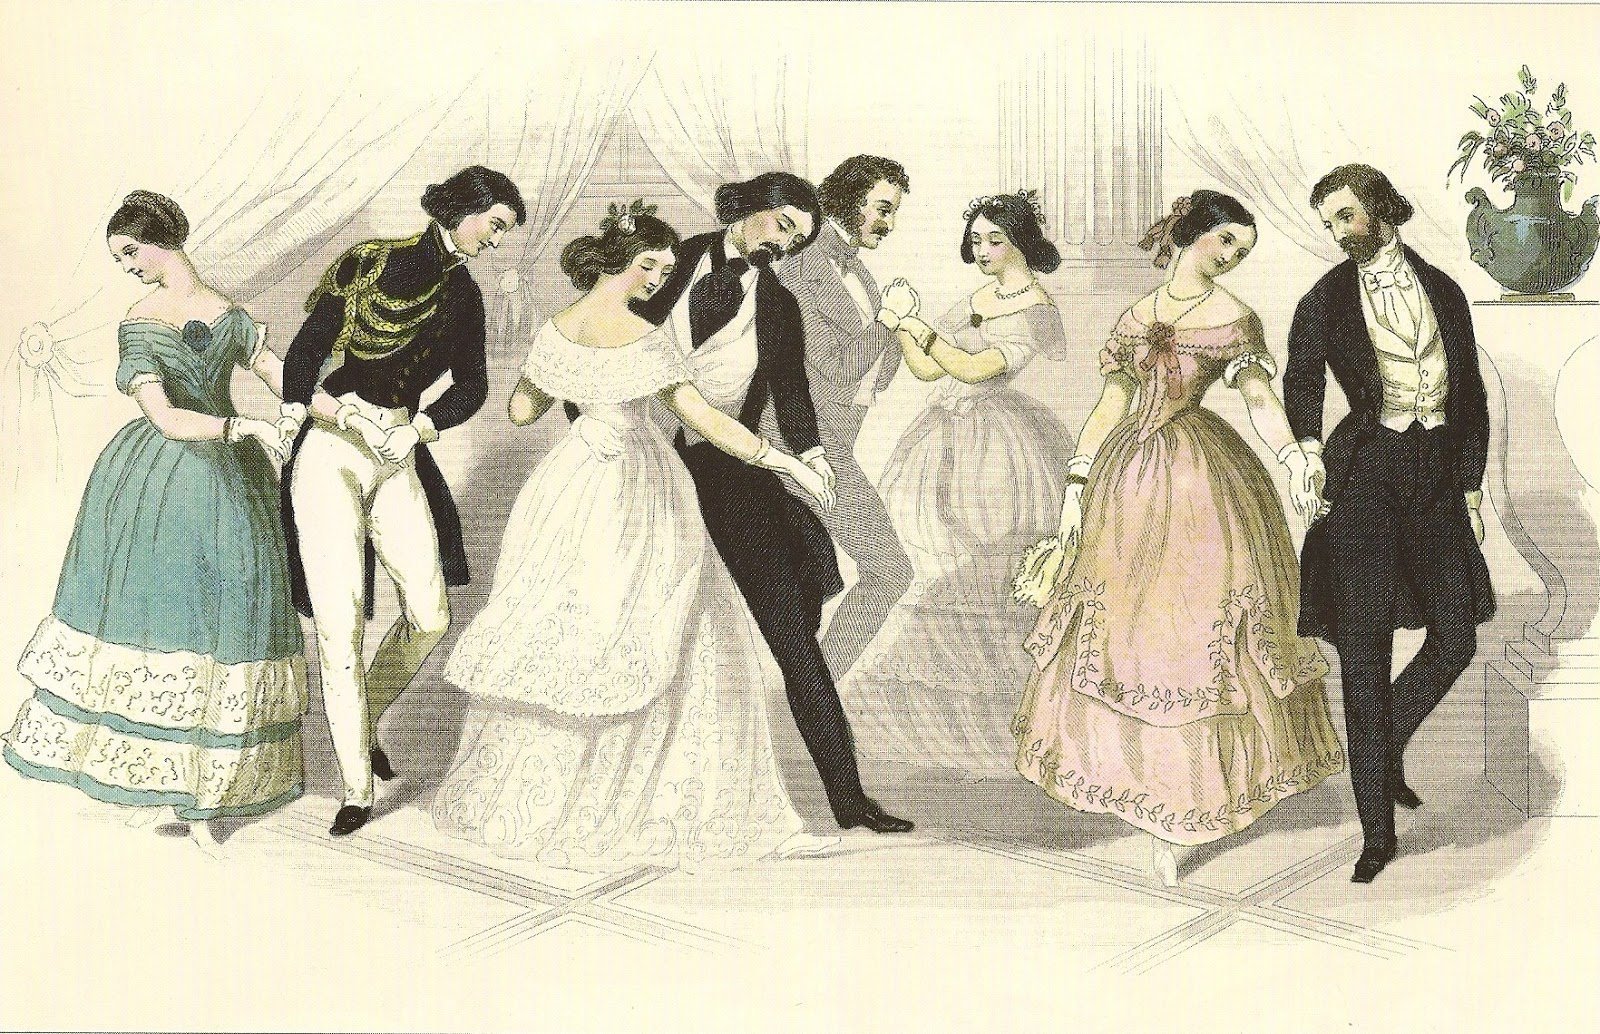 Еще раз перечитайте эпизод бал назовите. Мазурка на балу 19 века. Бальные танцы XIX века мазурка. Танцы на балу 19 век мазурка. Мазурка на балу 18 века.